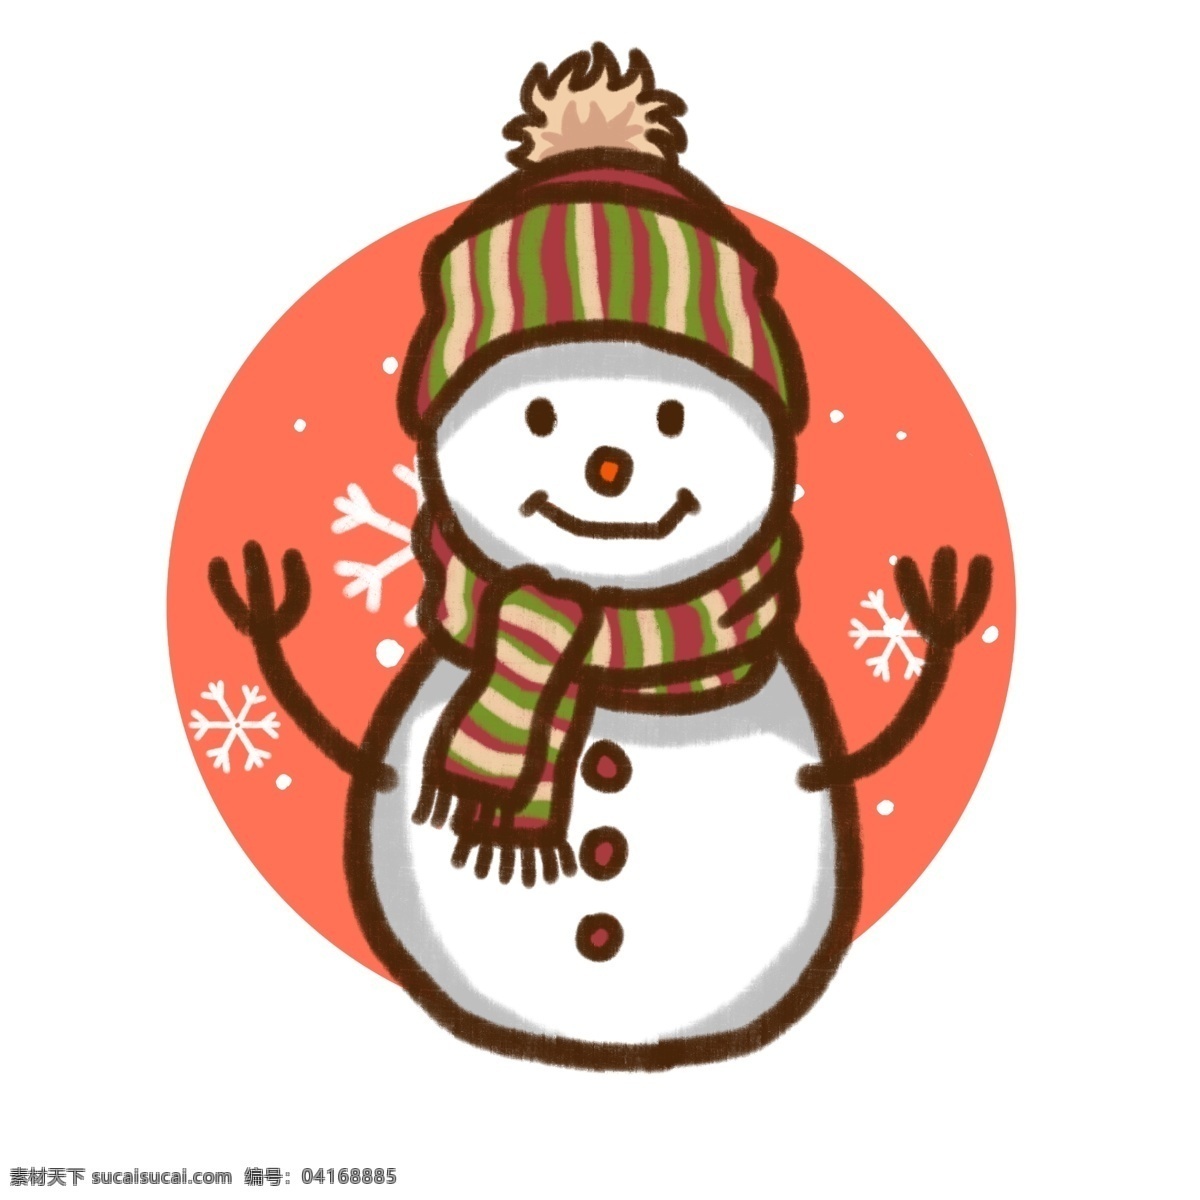 原创 手绘 风 插画 圣诞节 冬天 卡通 雪人 元素 可爱 雪花 手绘风 板绘 雪球 帽子 围巾 条纹